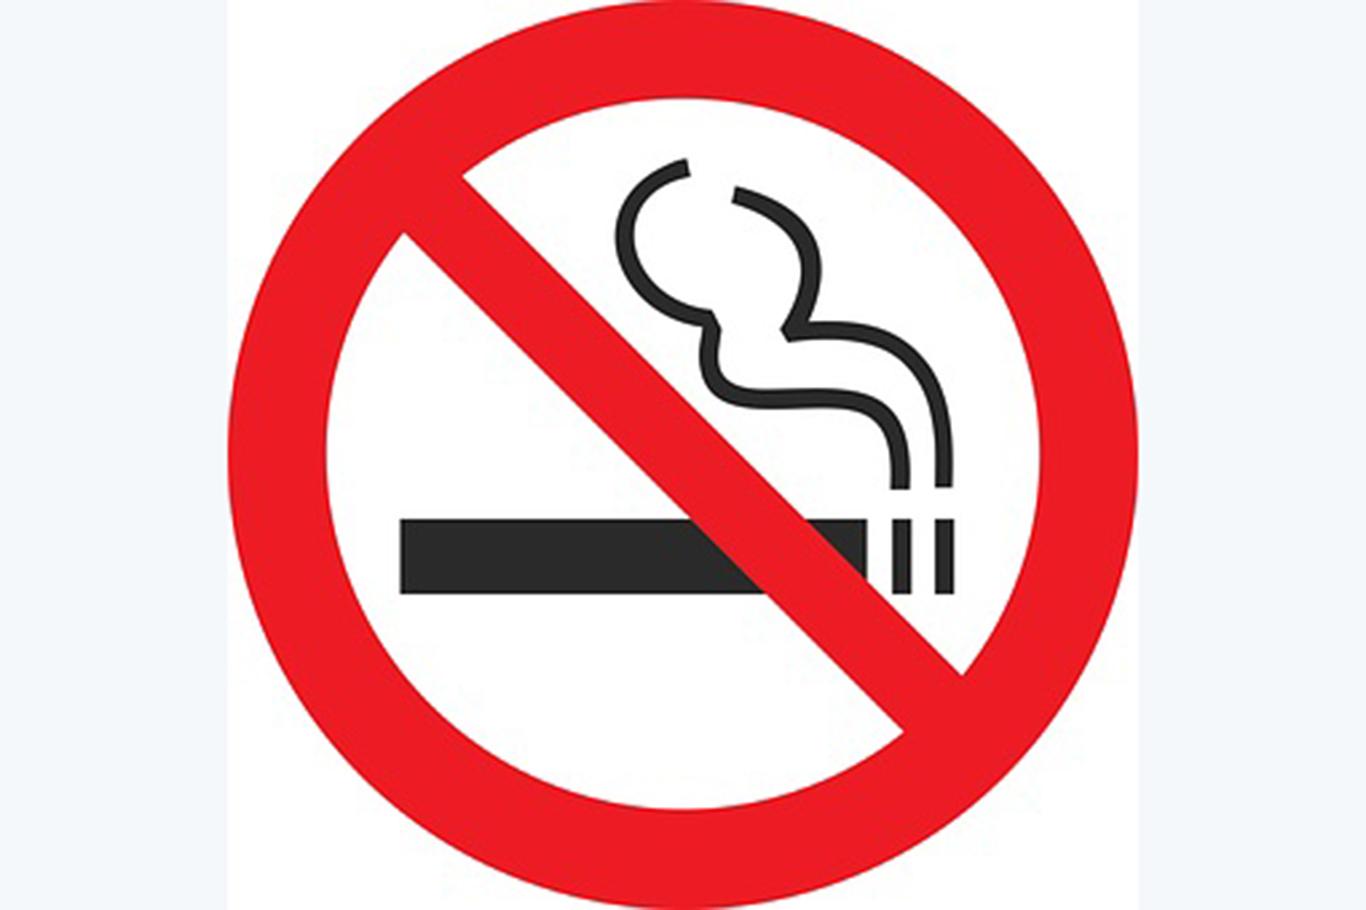 İspanya'nın Galiçya bölgesinde açık yerlerde sigara içmek yasaklandı